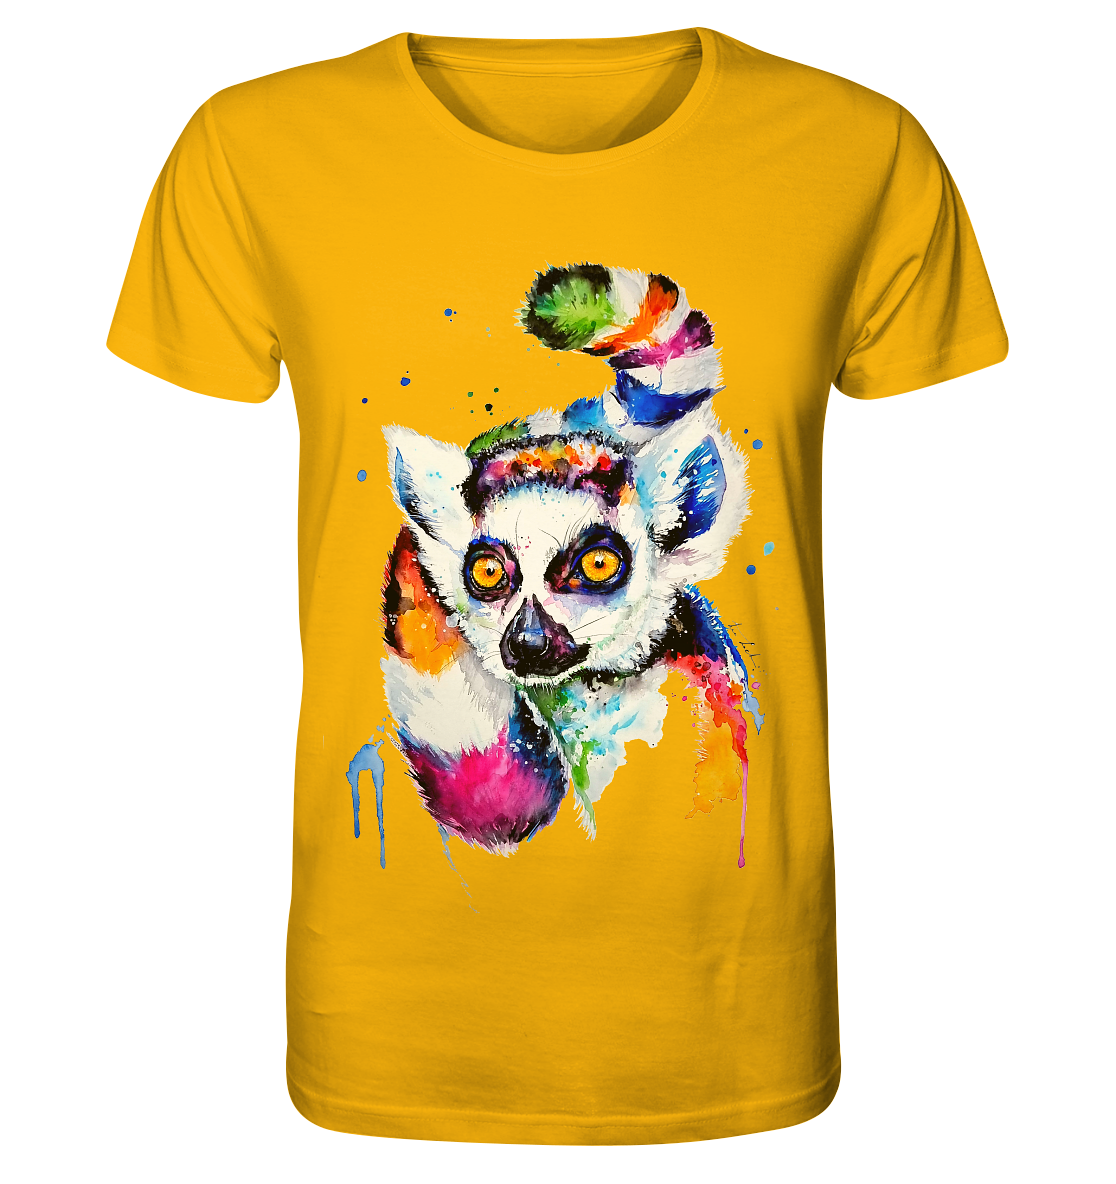 Bunter Katta - Organic Shirt